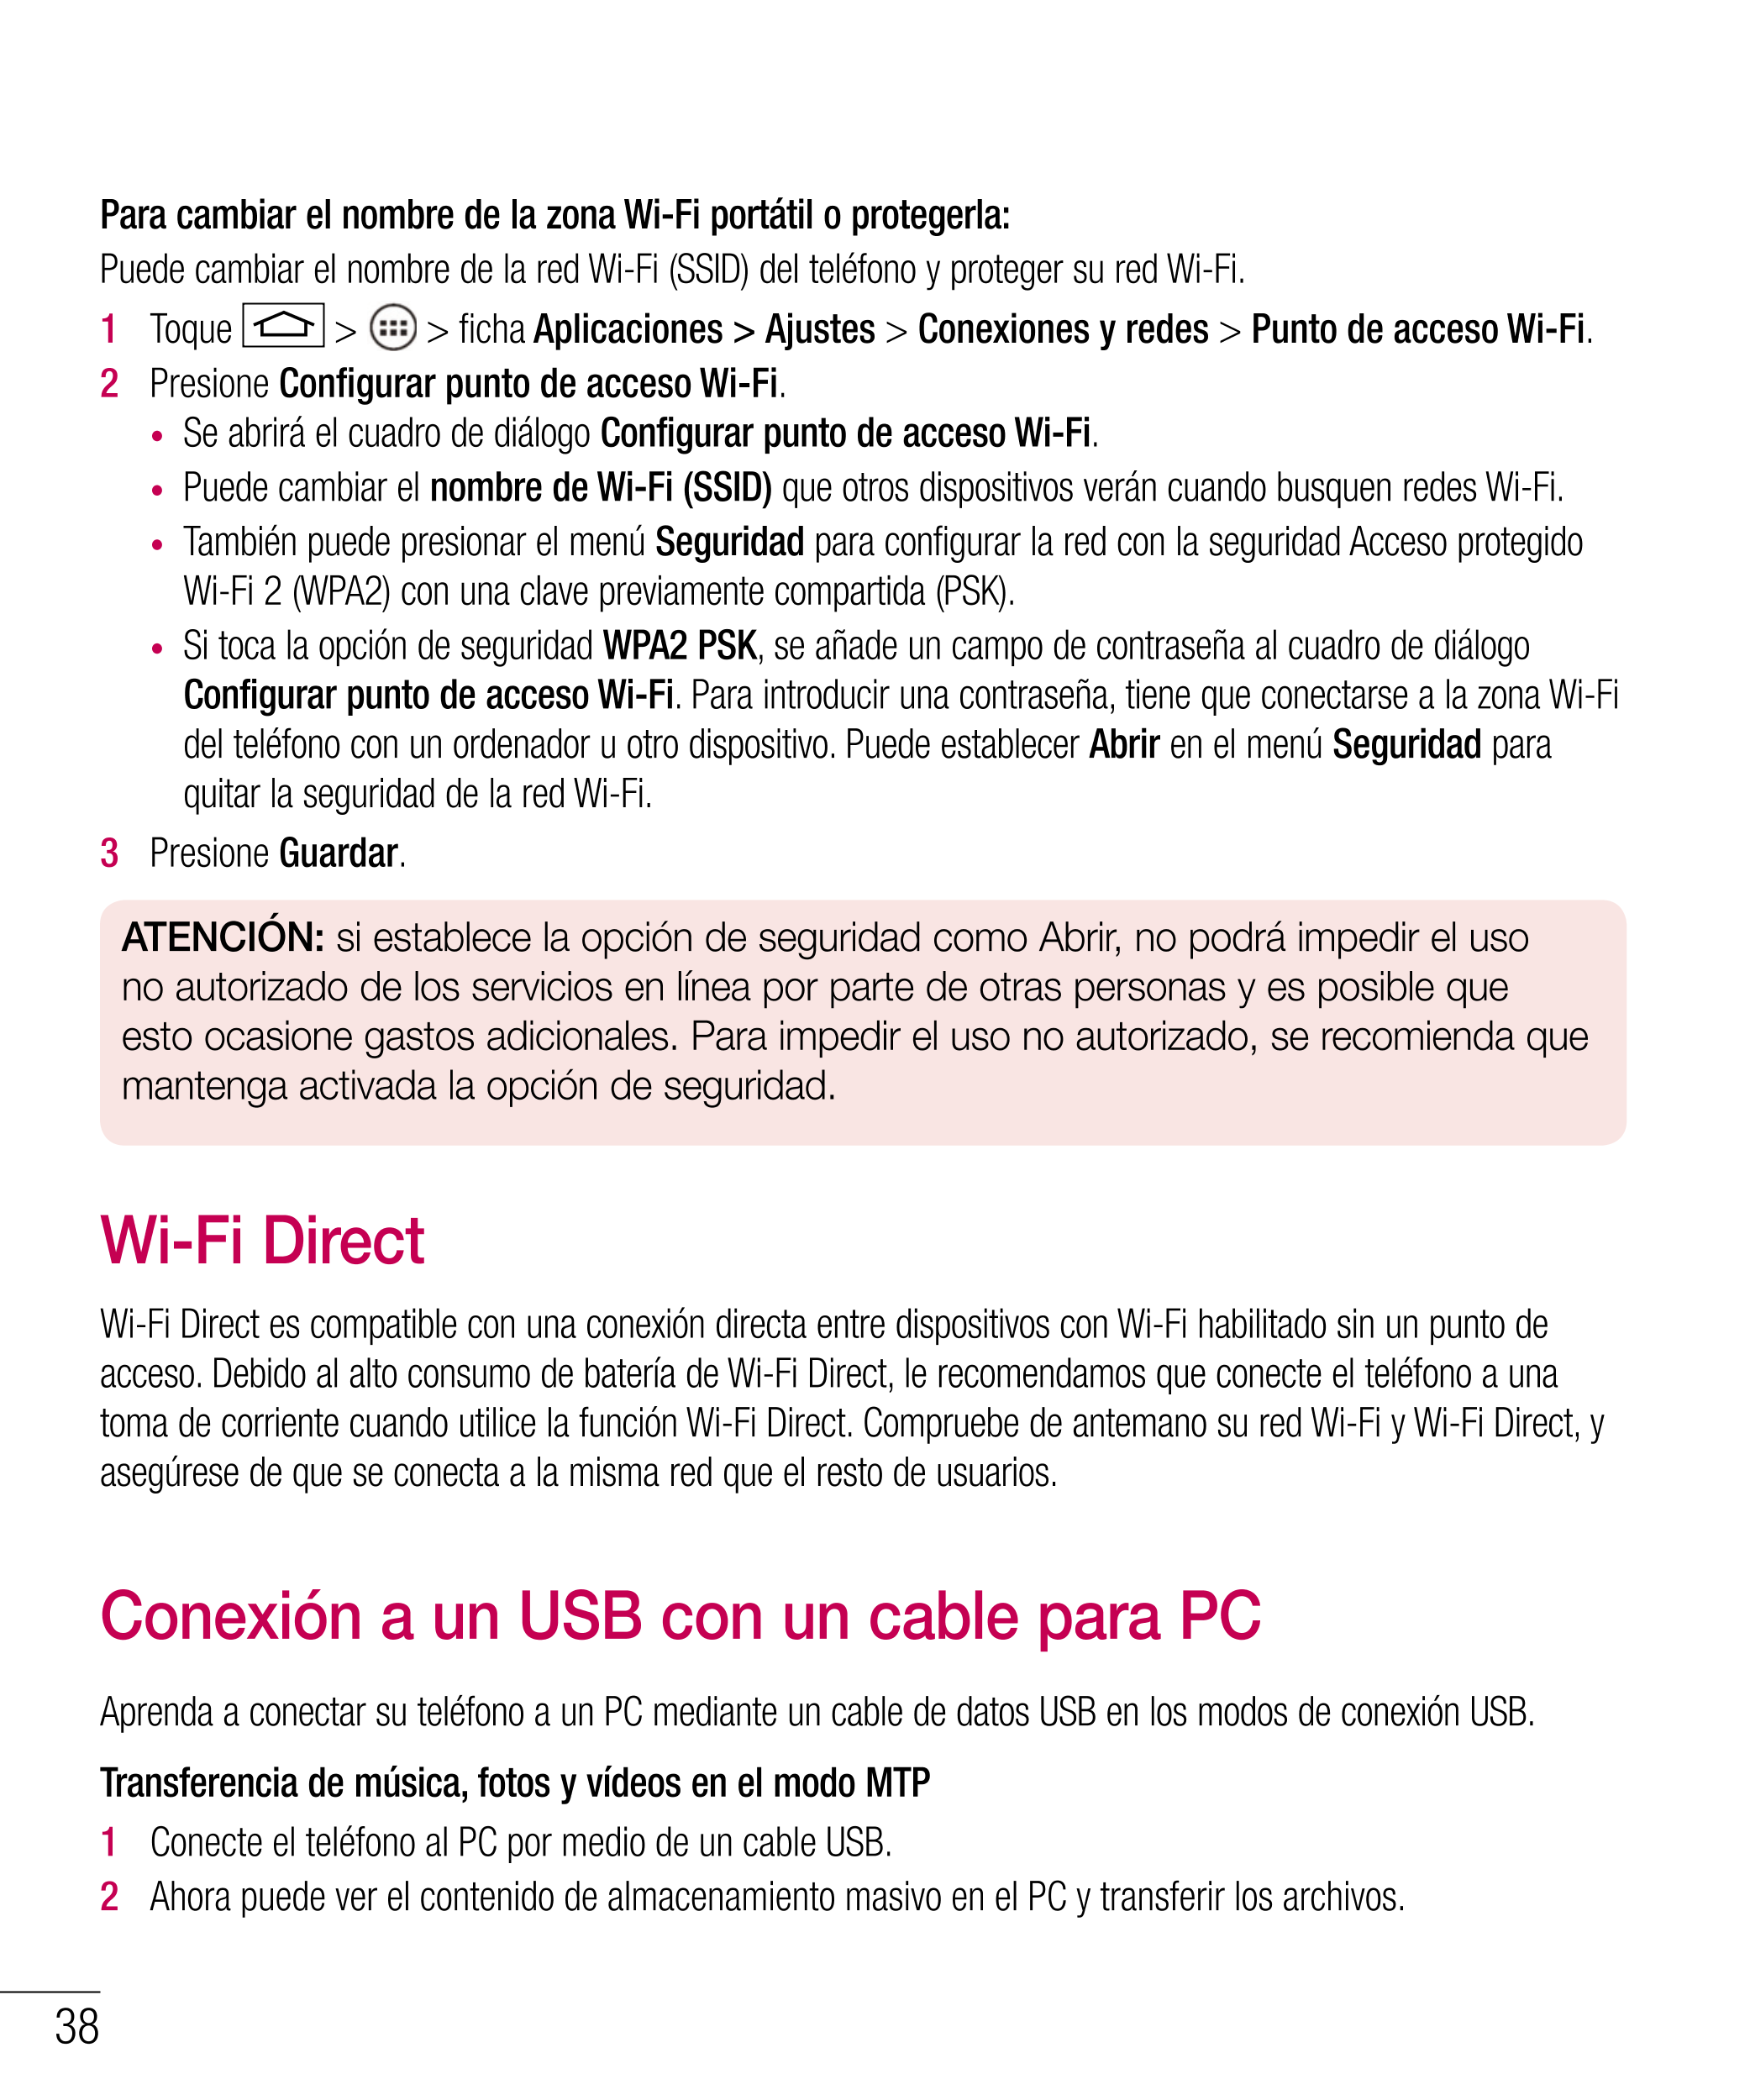 Para cambiar el nombre de la zona Wi-Fi portátil o protegerla:
Puede cambiar el nombre de la red Wi-Fi (SSID) del teléfono y pro